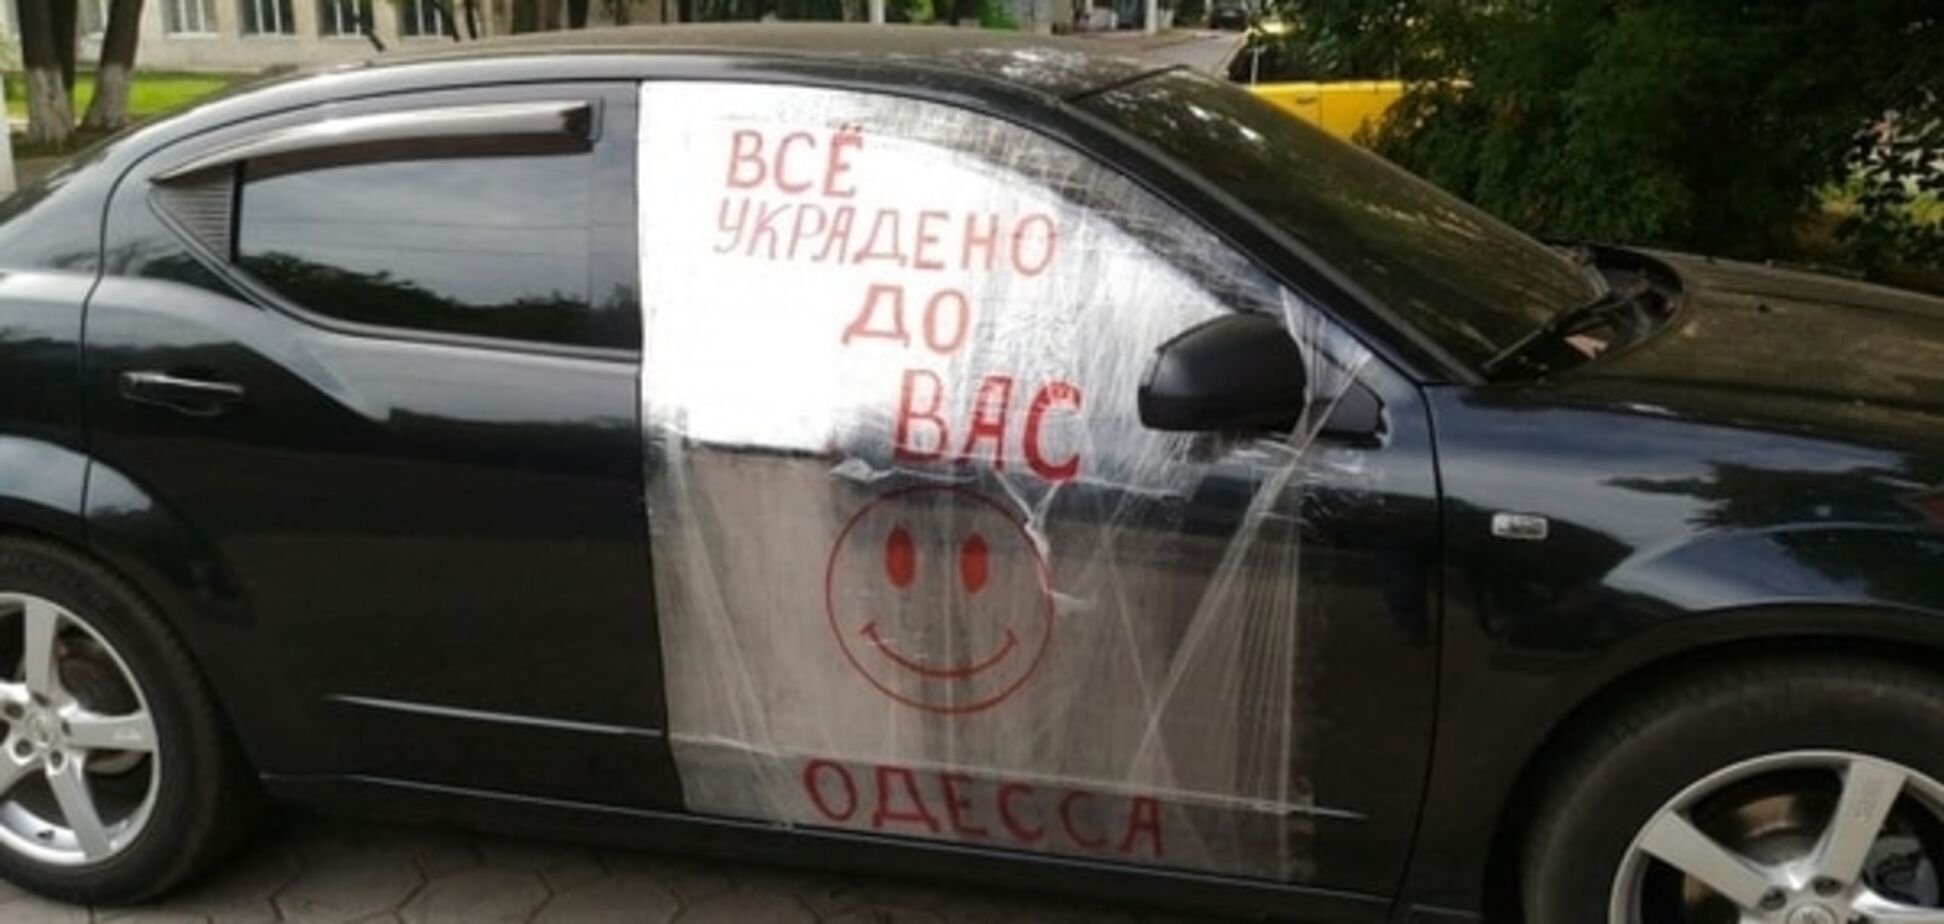 Так шутят только в Одессе! Владелец обворованной иномарки покорил жителей города своим оптимизмом. Фотофакт